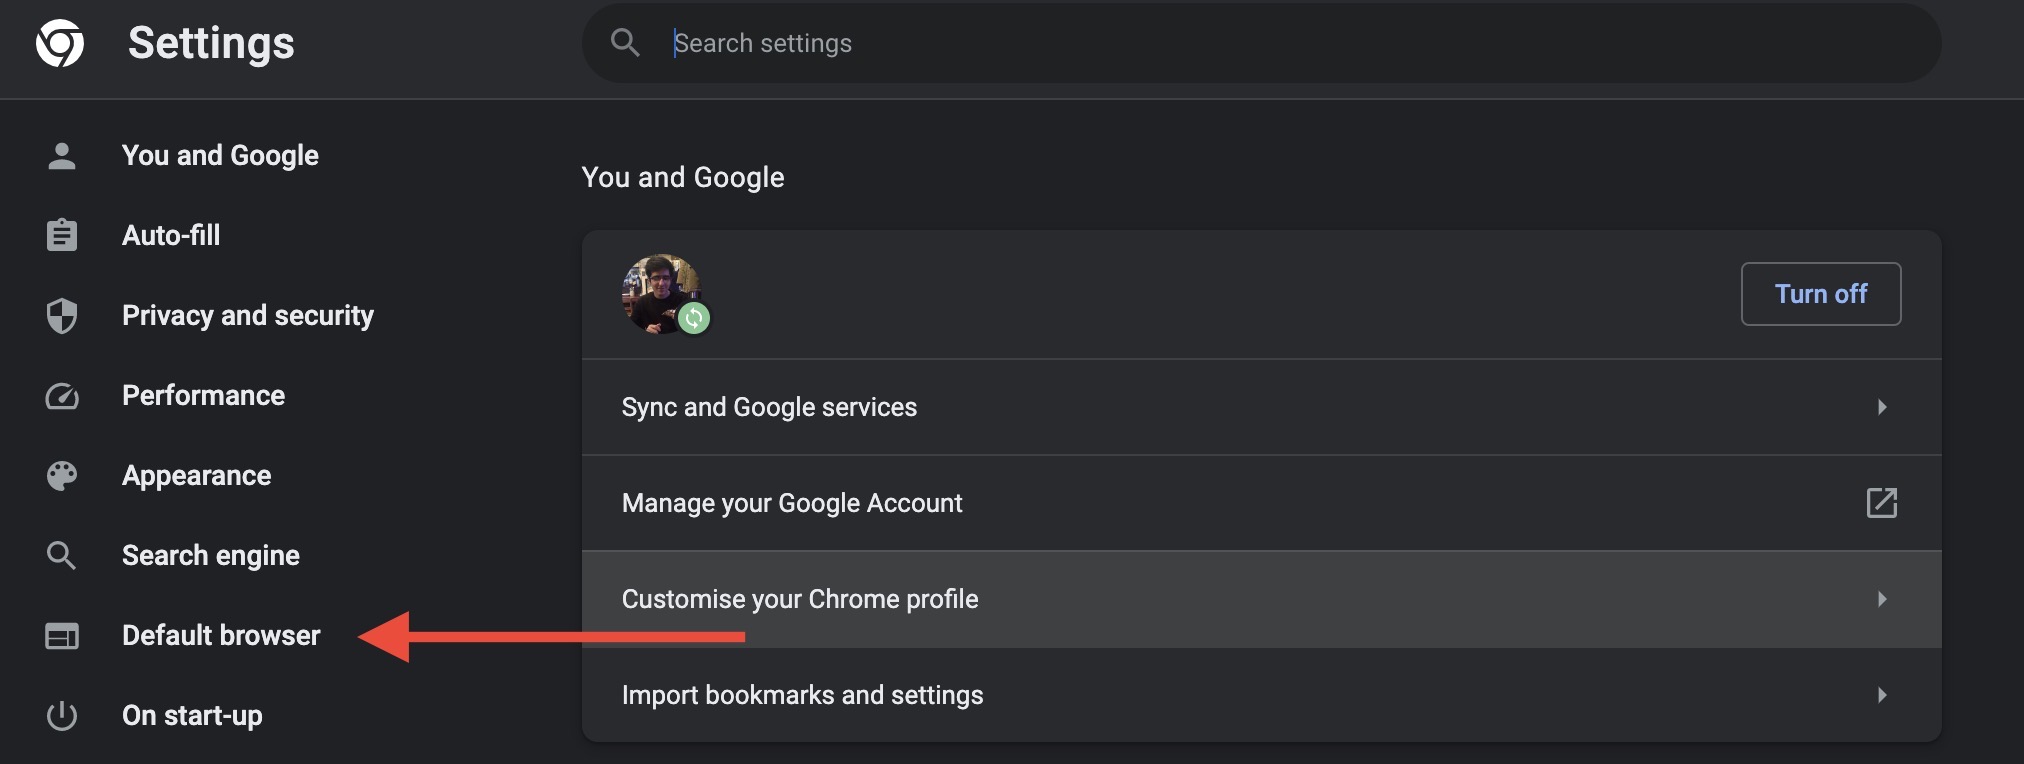 Settings menu in Chrome